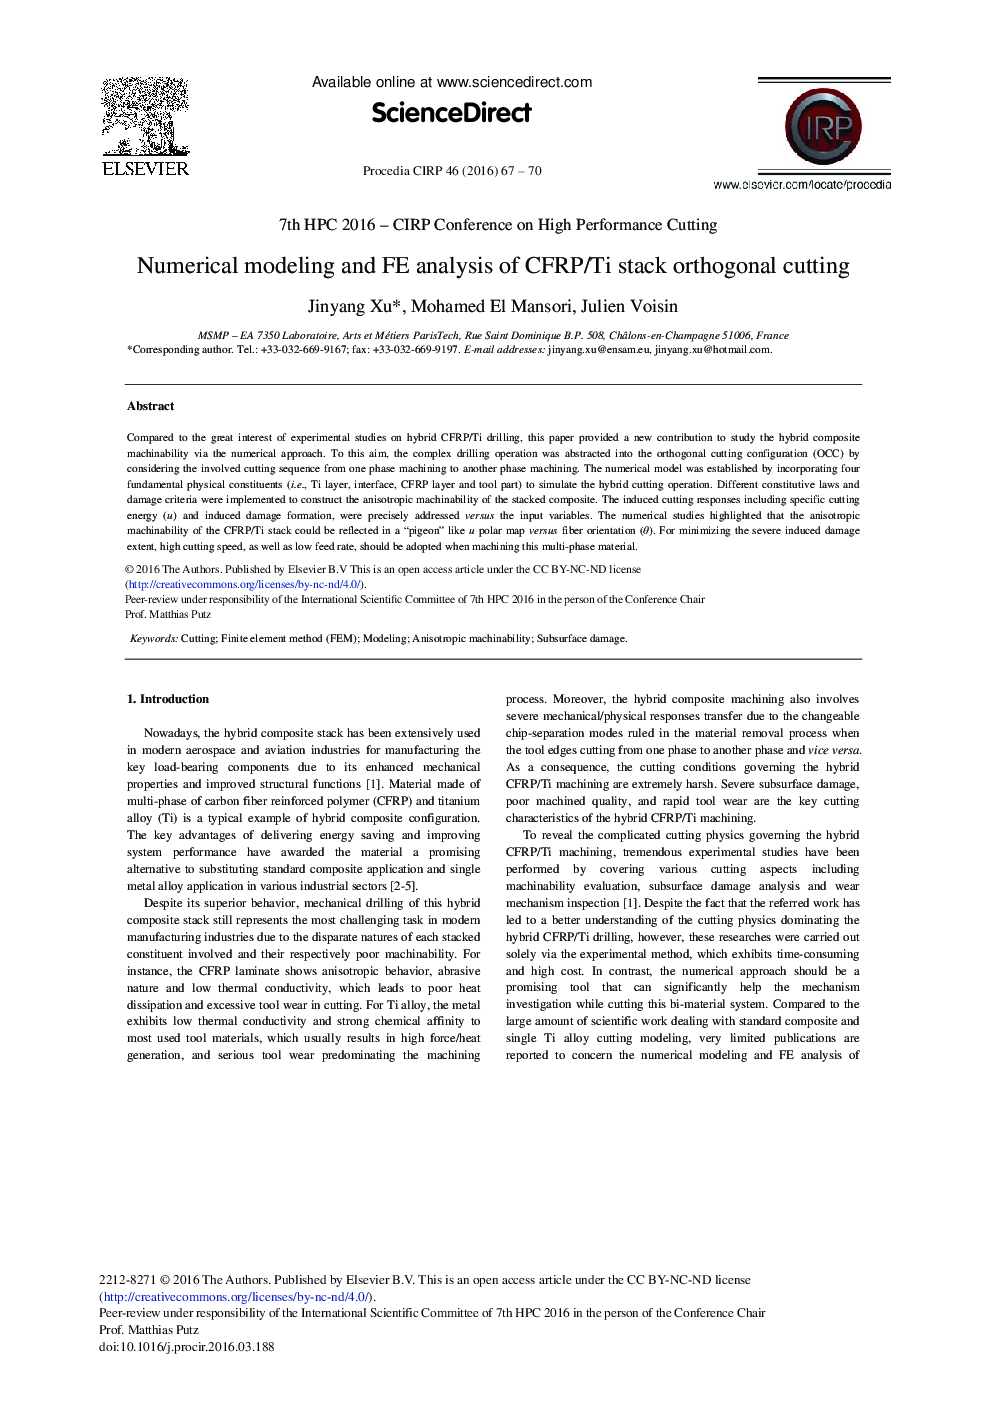 مدل سازی عددی و تجزیه و تحلیل FE از برش متعامد پشته CFRP/تیتانیم 